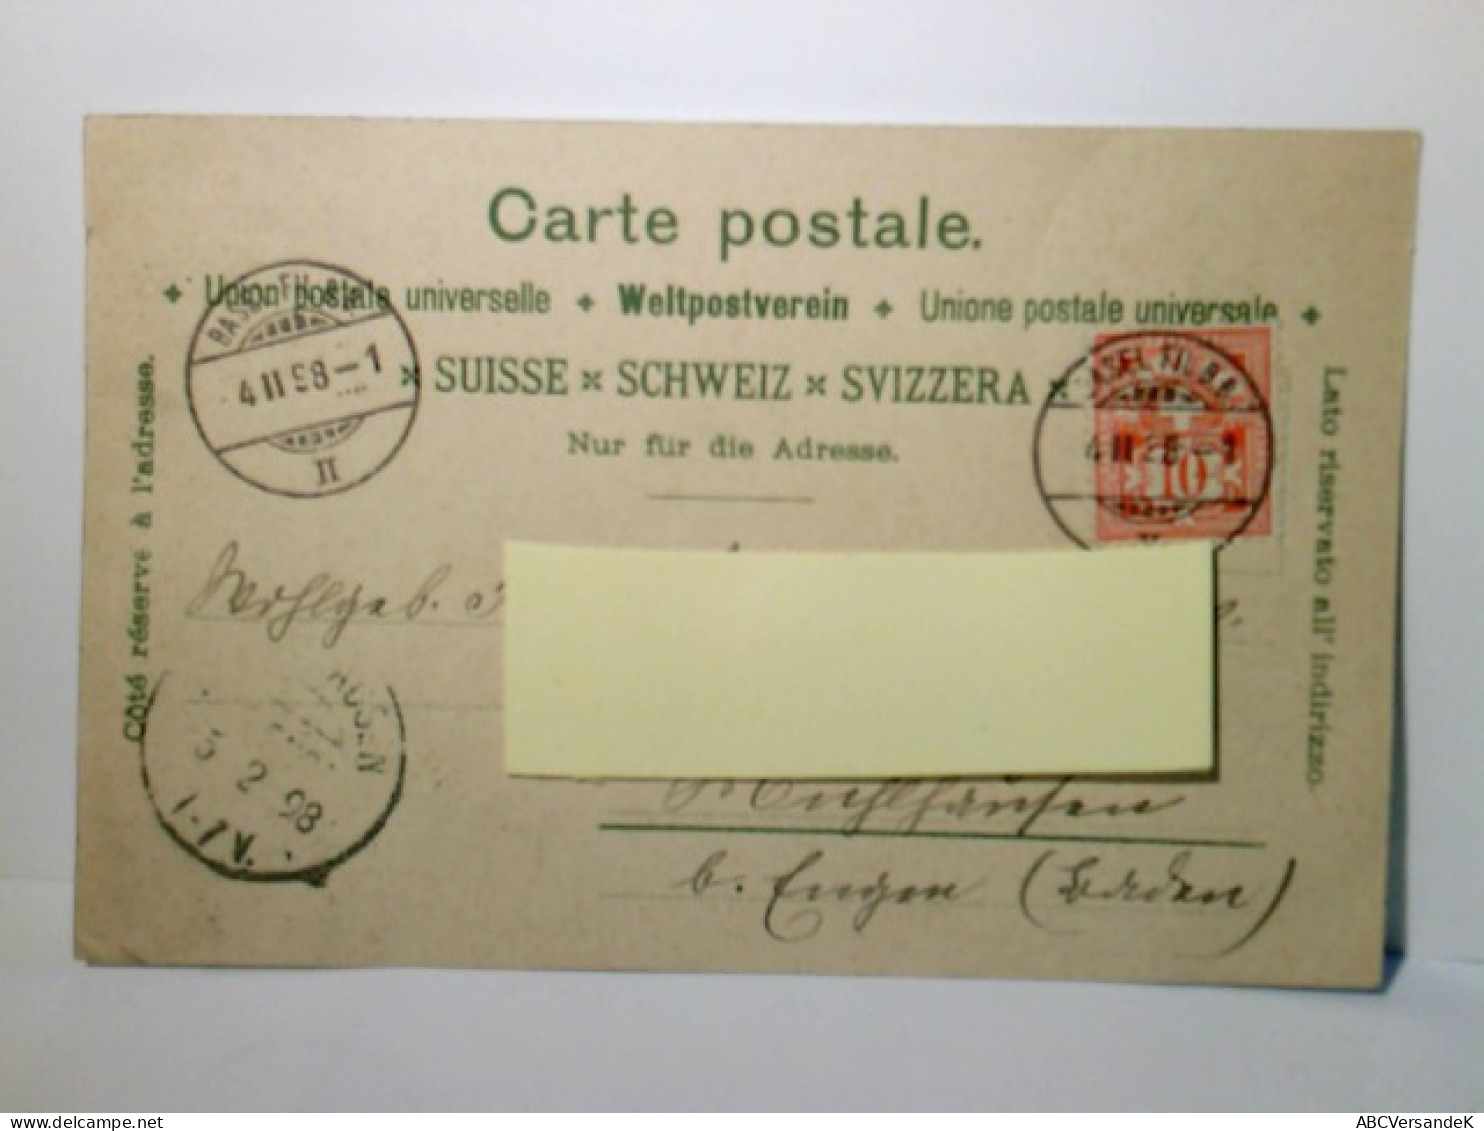 Historische Postkarten Der Schweiz. Schlacht Bei St. Jakob An Der Birs. Alte Ansichtskarte / Lithographie Farb - Risch-Rotkreuz